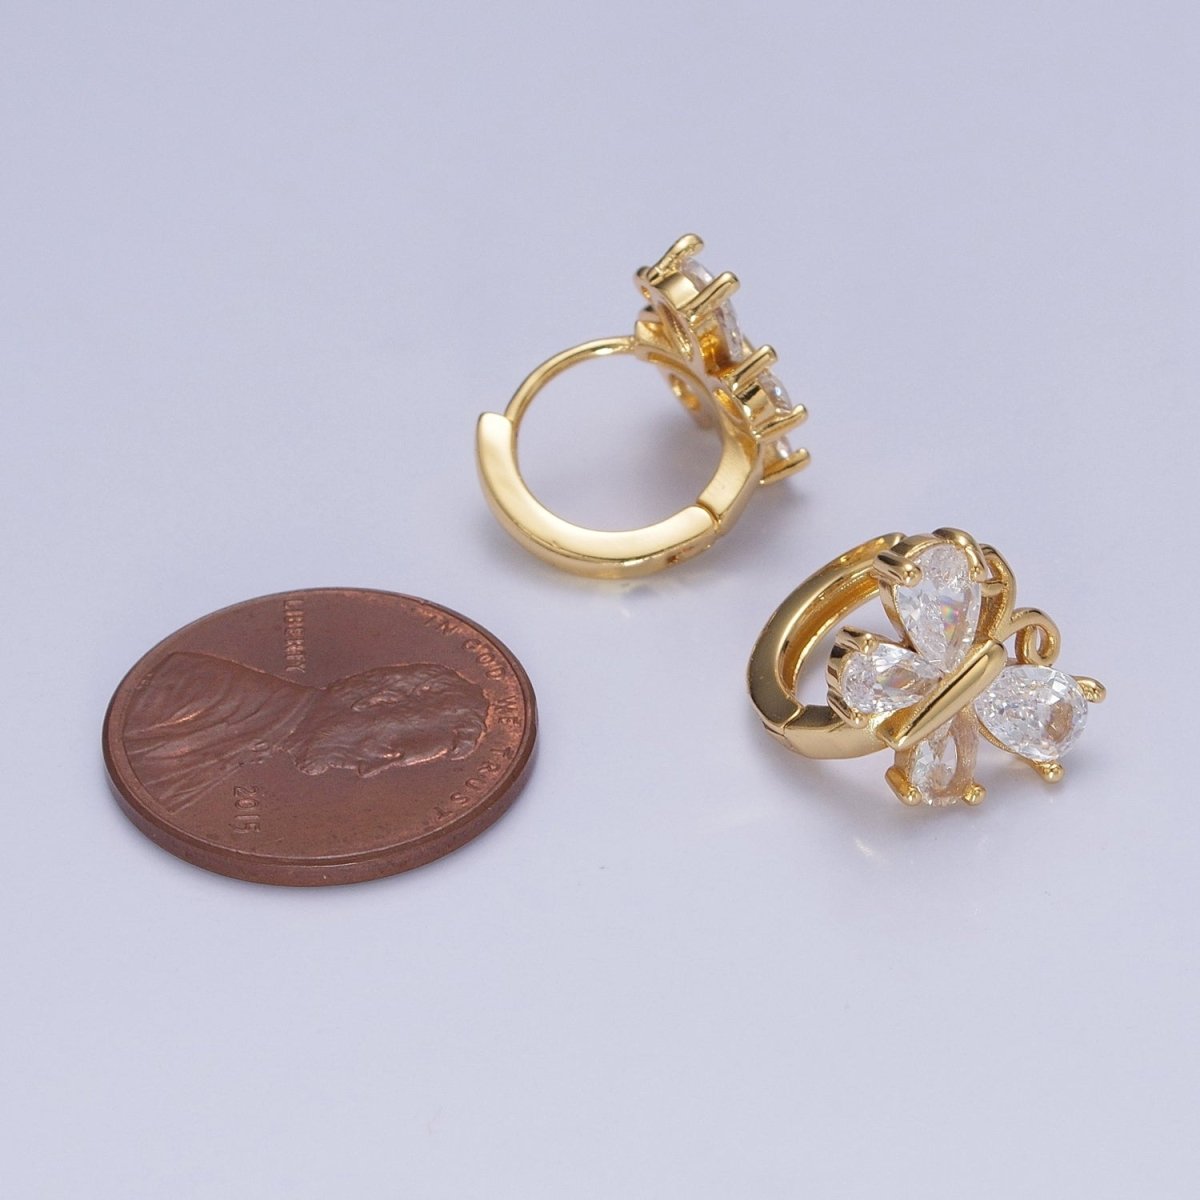 Gold Huggie Earrings Dainty Clear Cubic Zirconia Butterfly Hoop Earrings for Women T-394 - DLUXCA